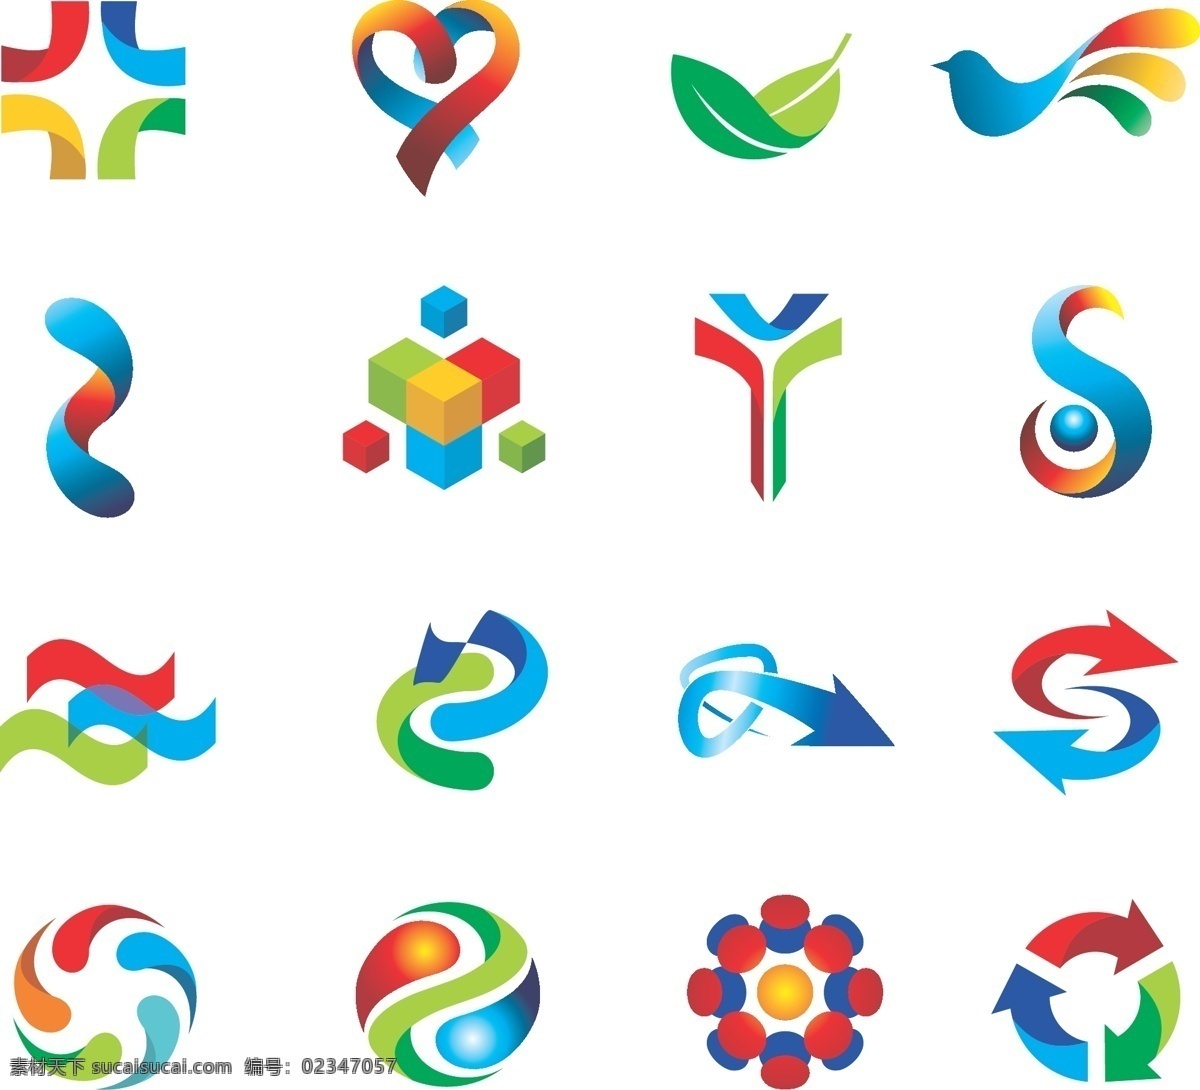 动感 箭头 logo logo设计 爱心 小鸟 线条 扭曲 树叶 绿叶 方体 波形 旋转 水珠 白色